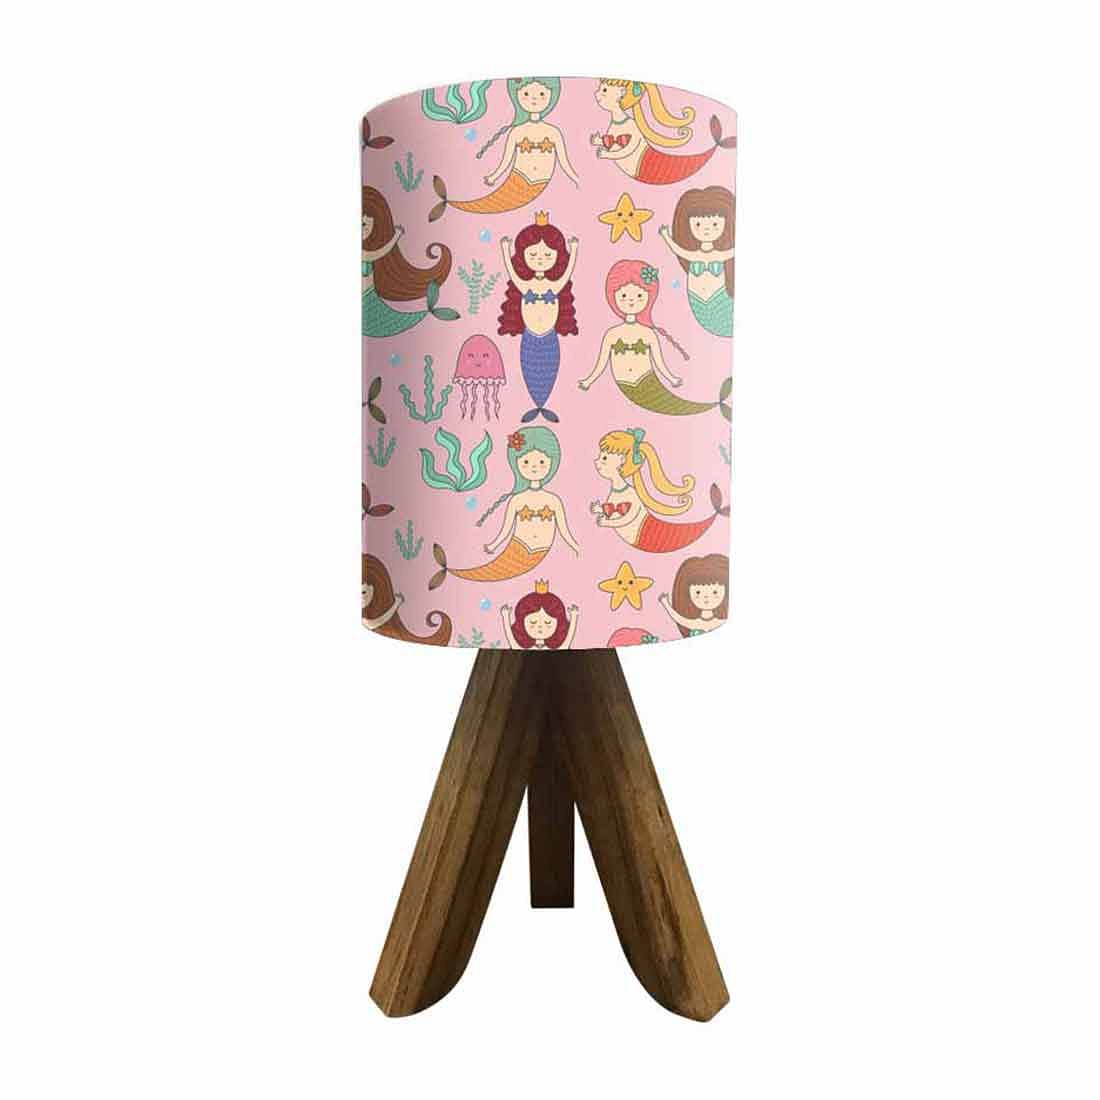 Wooden Base Lamp For Kids  - Mermaid Nutcase